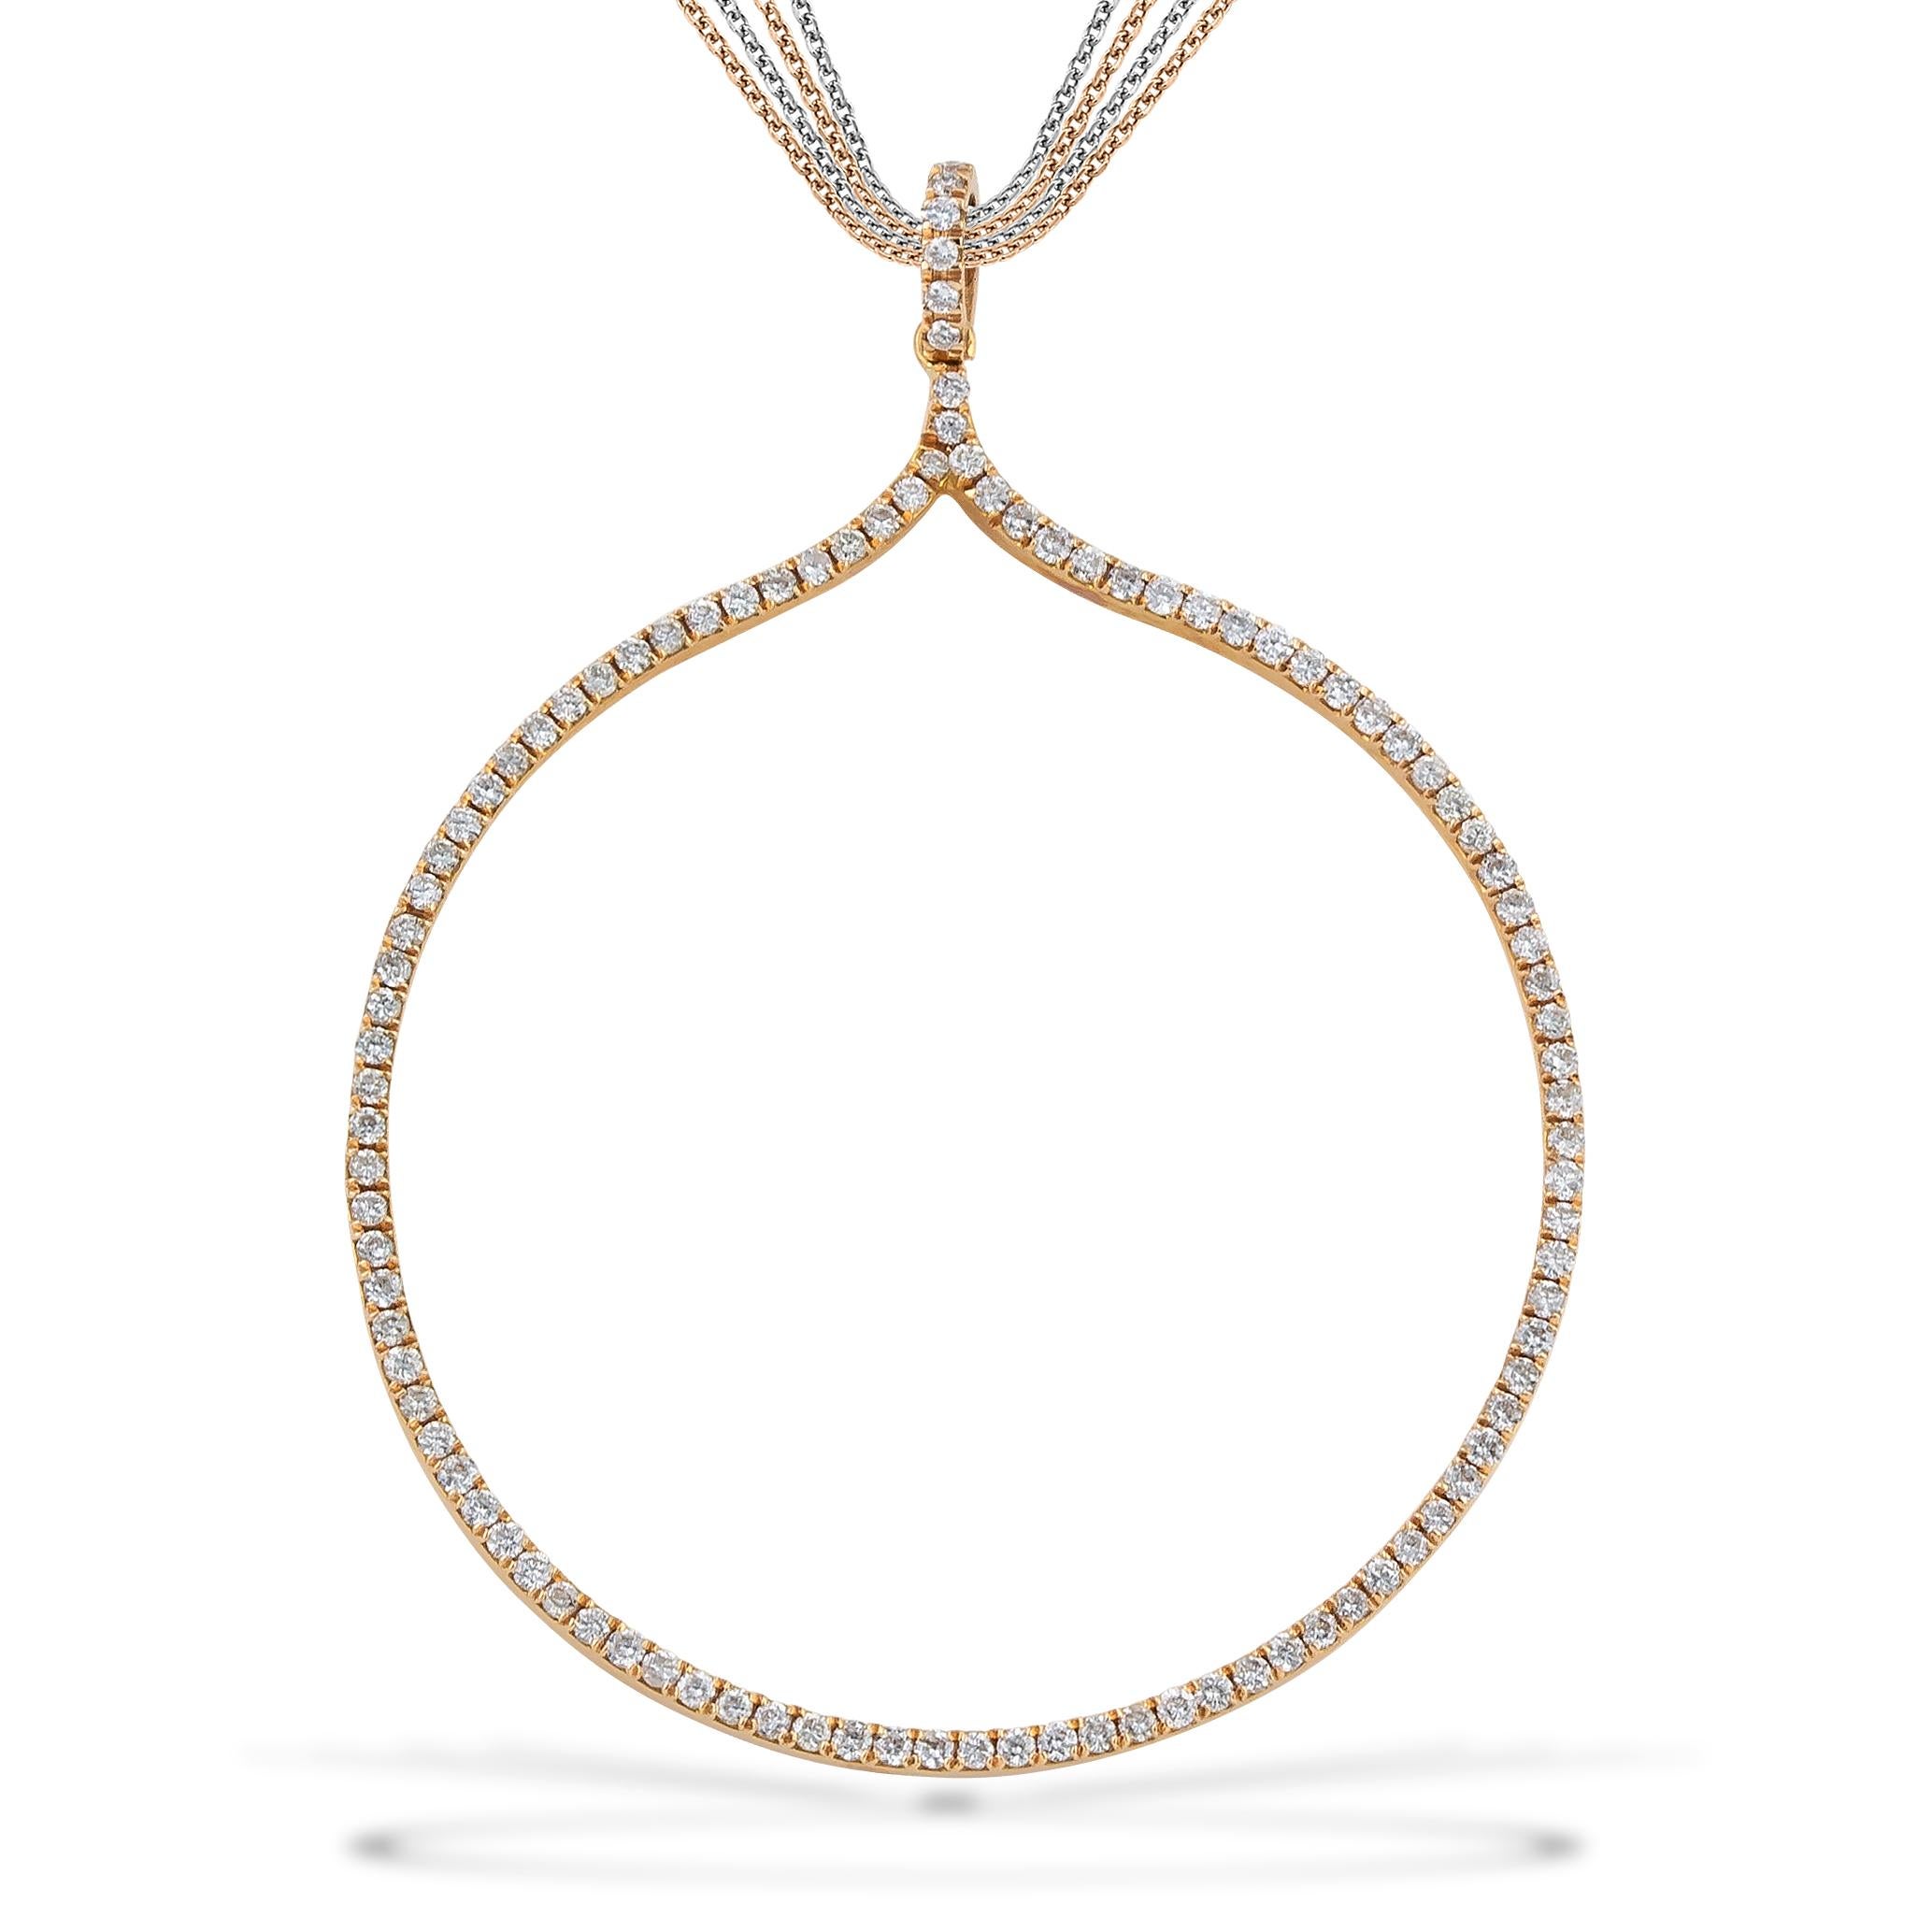 Runder Diamant-Anhänger in 18-karätigem Roségold mit Multiketten-Halskette. Dieser Hoop-Anhänger - Halskette ist handgefertigt in 18kt Rose Gold. Er wird mit einer Multikette geliefert (2x Roségold und 2x Weißgold mit Diamantschliff). Diese